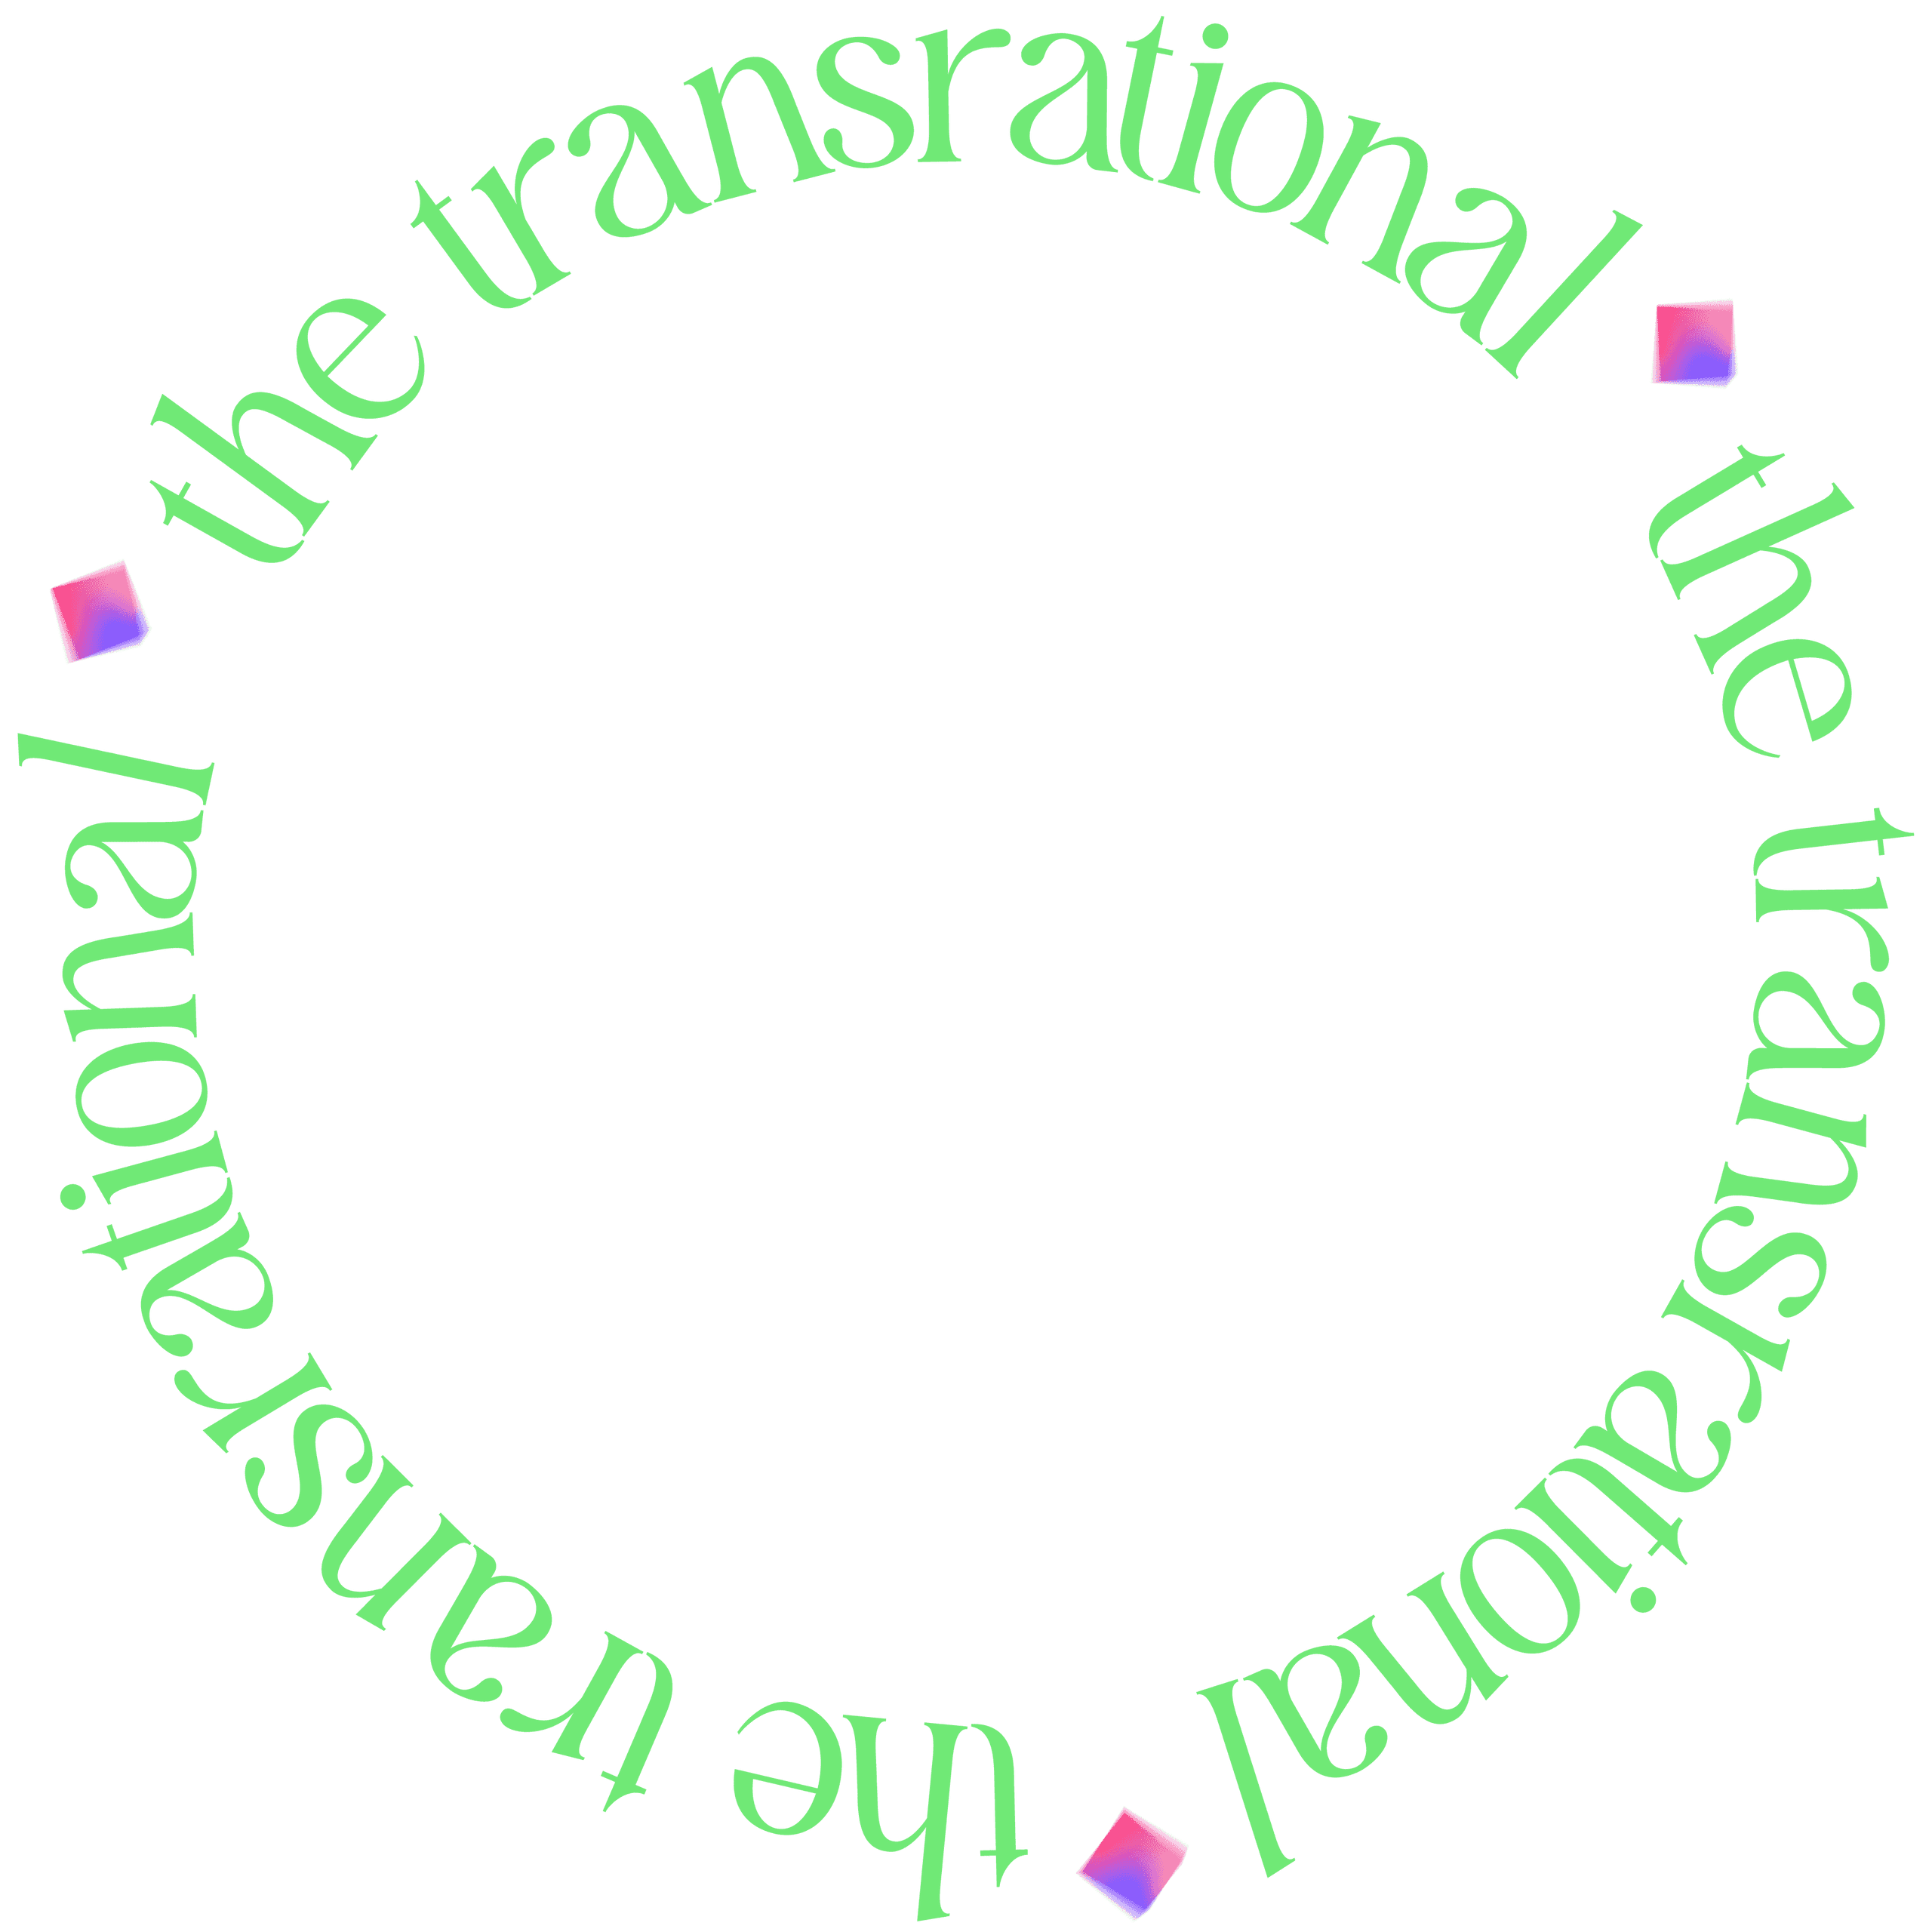 transrationaltransrationaltransrationaltransrationaltransrational